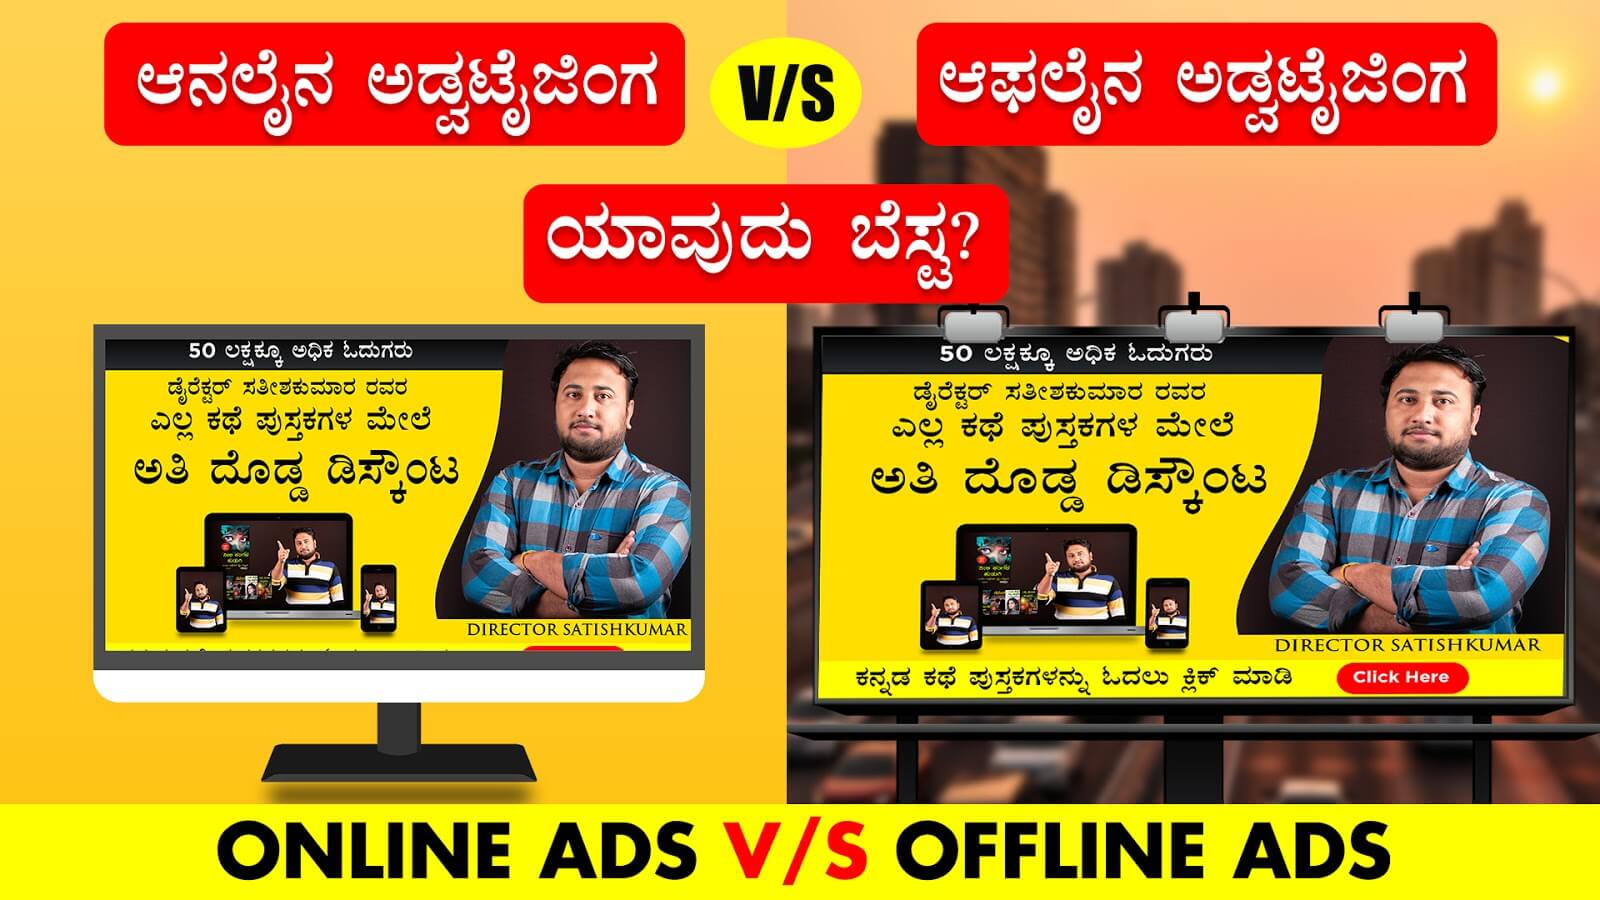 You are currently viewing ಆನಲೈನ ಅಡ್ವಟೈಜಿಂಗ V/S ಆಫಲೈನ ಅಡ್ವಟೈಜಿಂಗ ಯಾವುದು ಬೆಸ್ಟ? – Online Ads V/S Offline Ads in Kannada